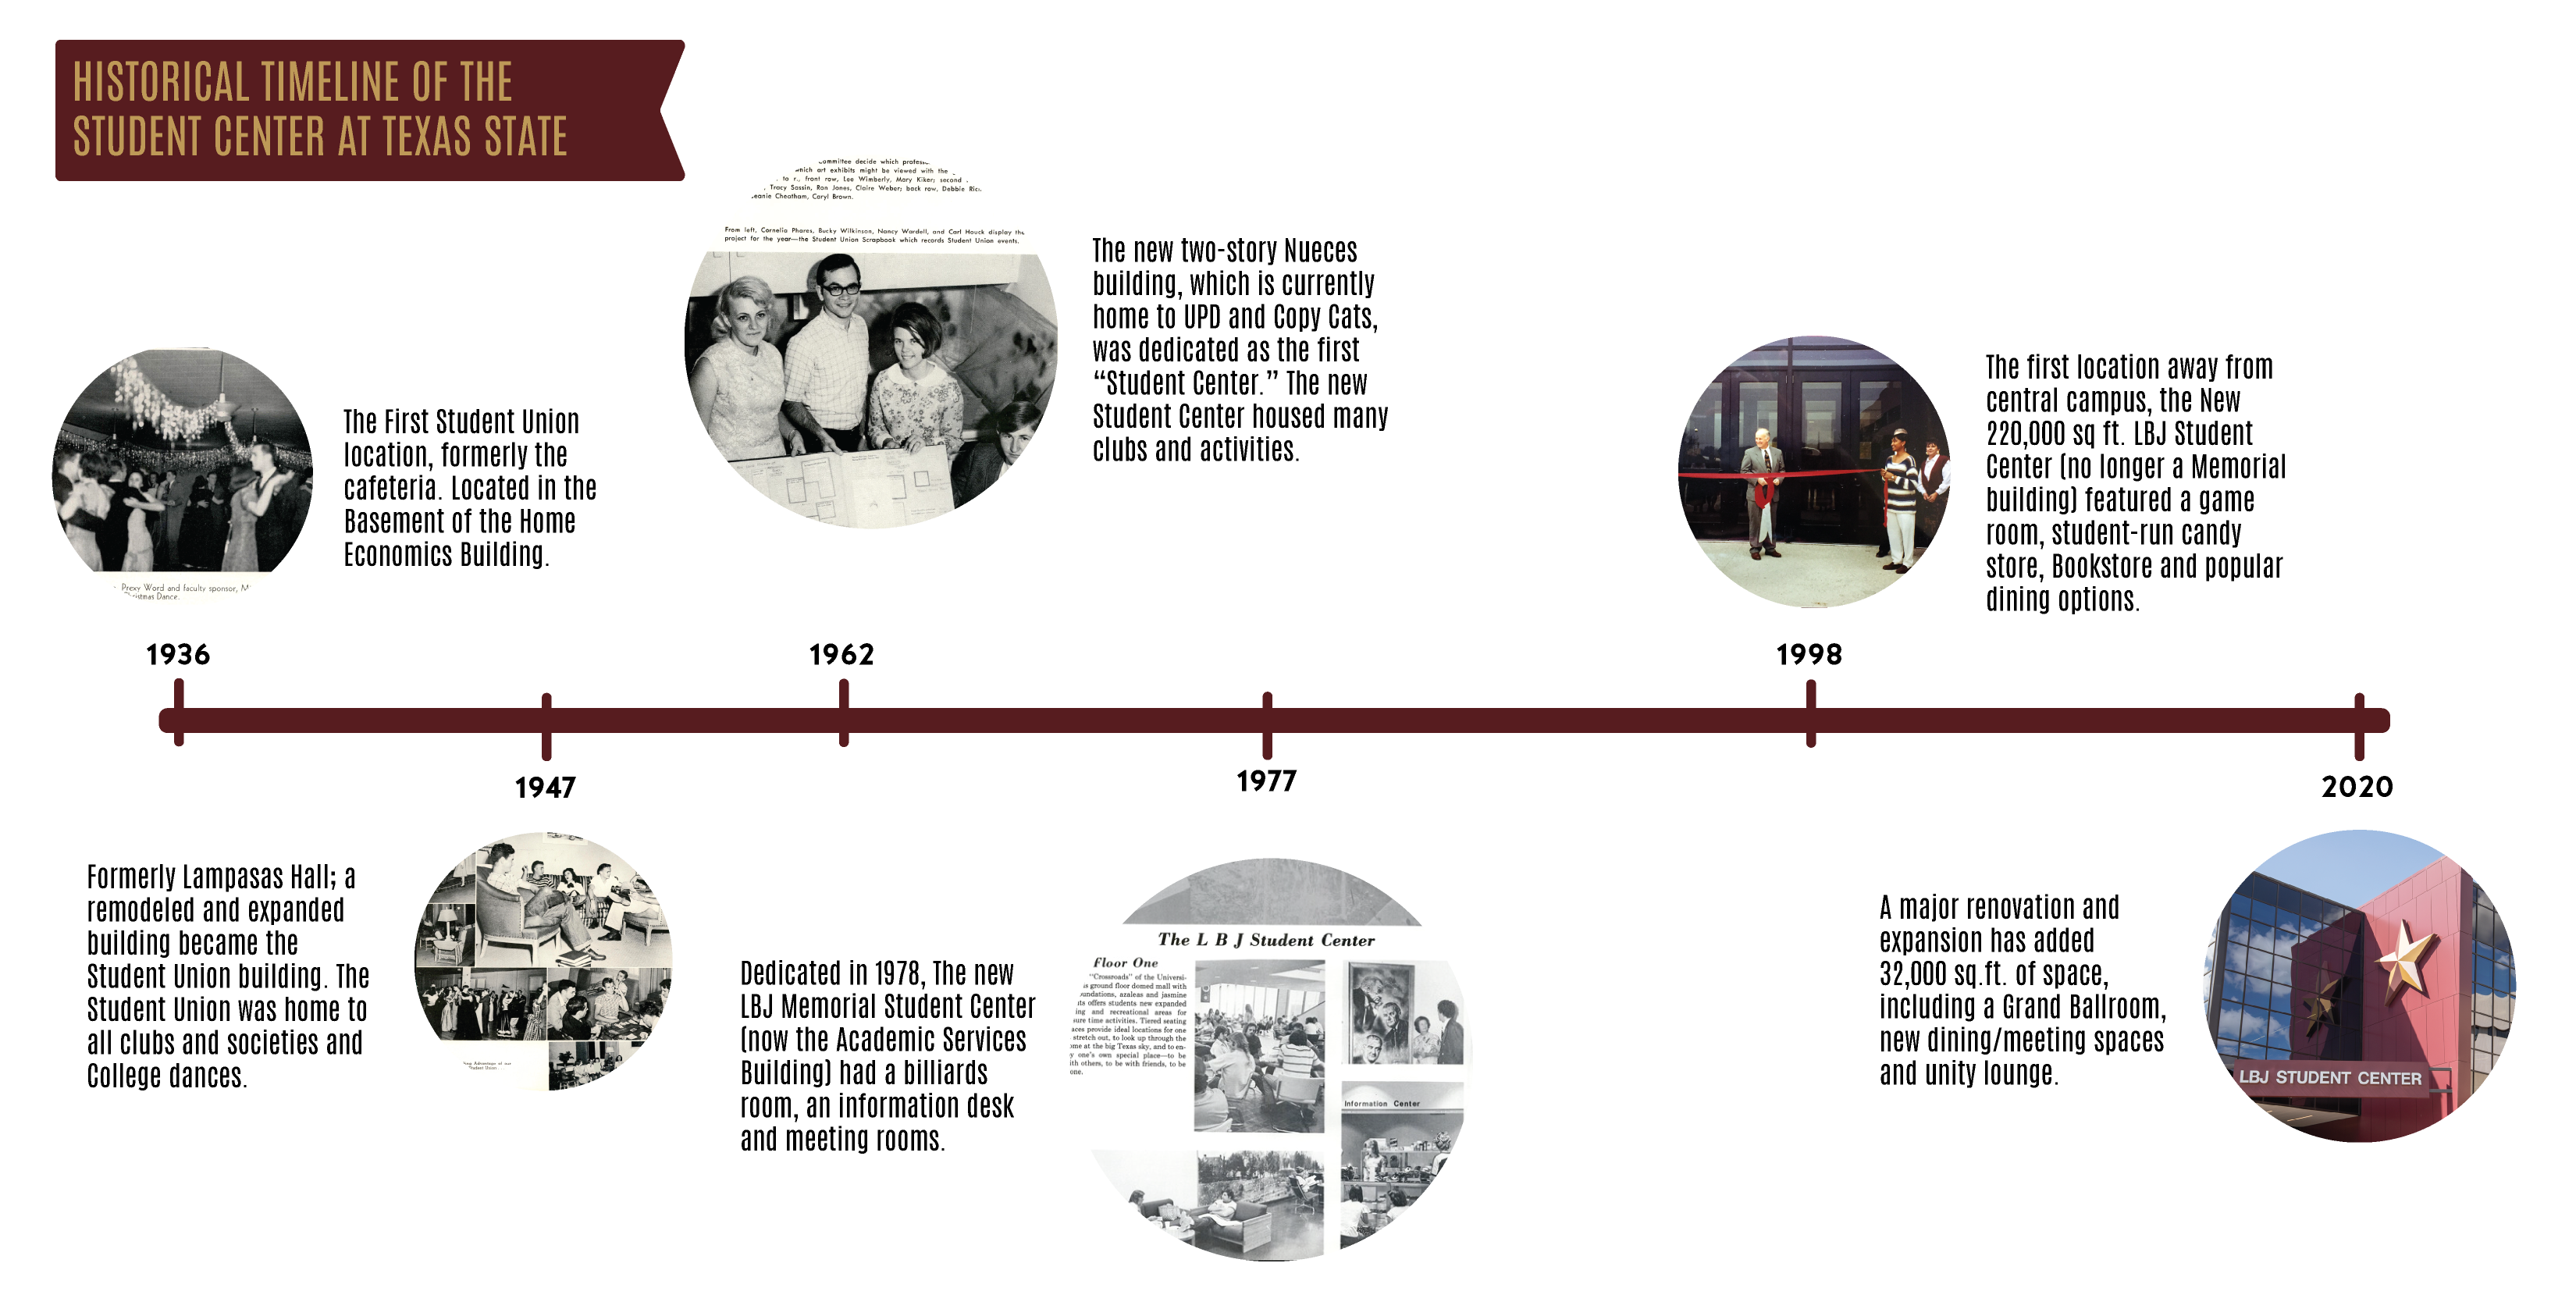 LBJSC Timeline Image